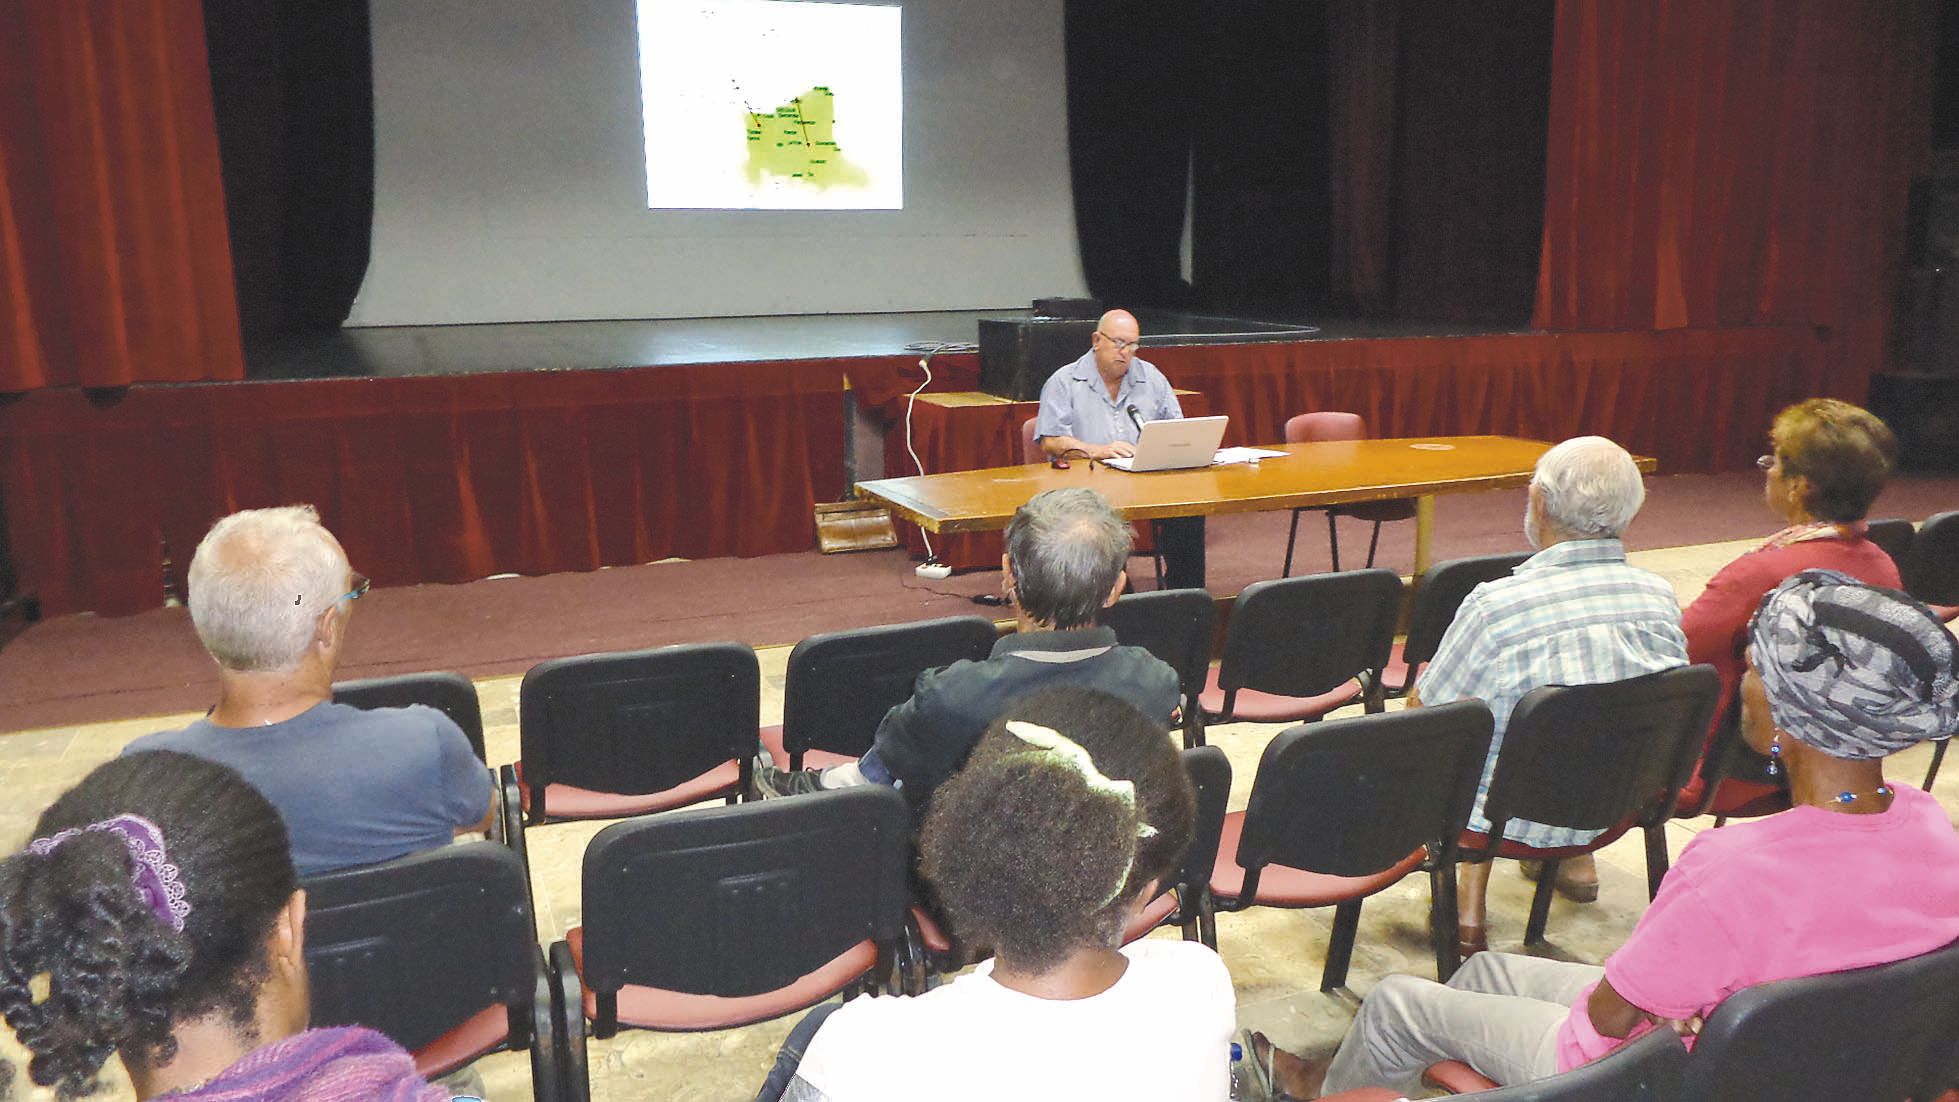 Tout a commencé vendredi au centre socioculturel. L’historien Jerry Delathière a tenu une conférence sur les migrations dans la région de La Foa, concernant les Européens, les Indiens, les Javanais, les Japonais, les Wallisiens et Futuniens et les Polynés